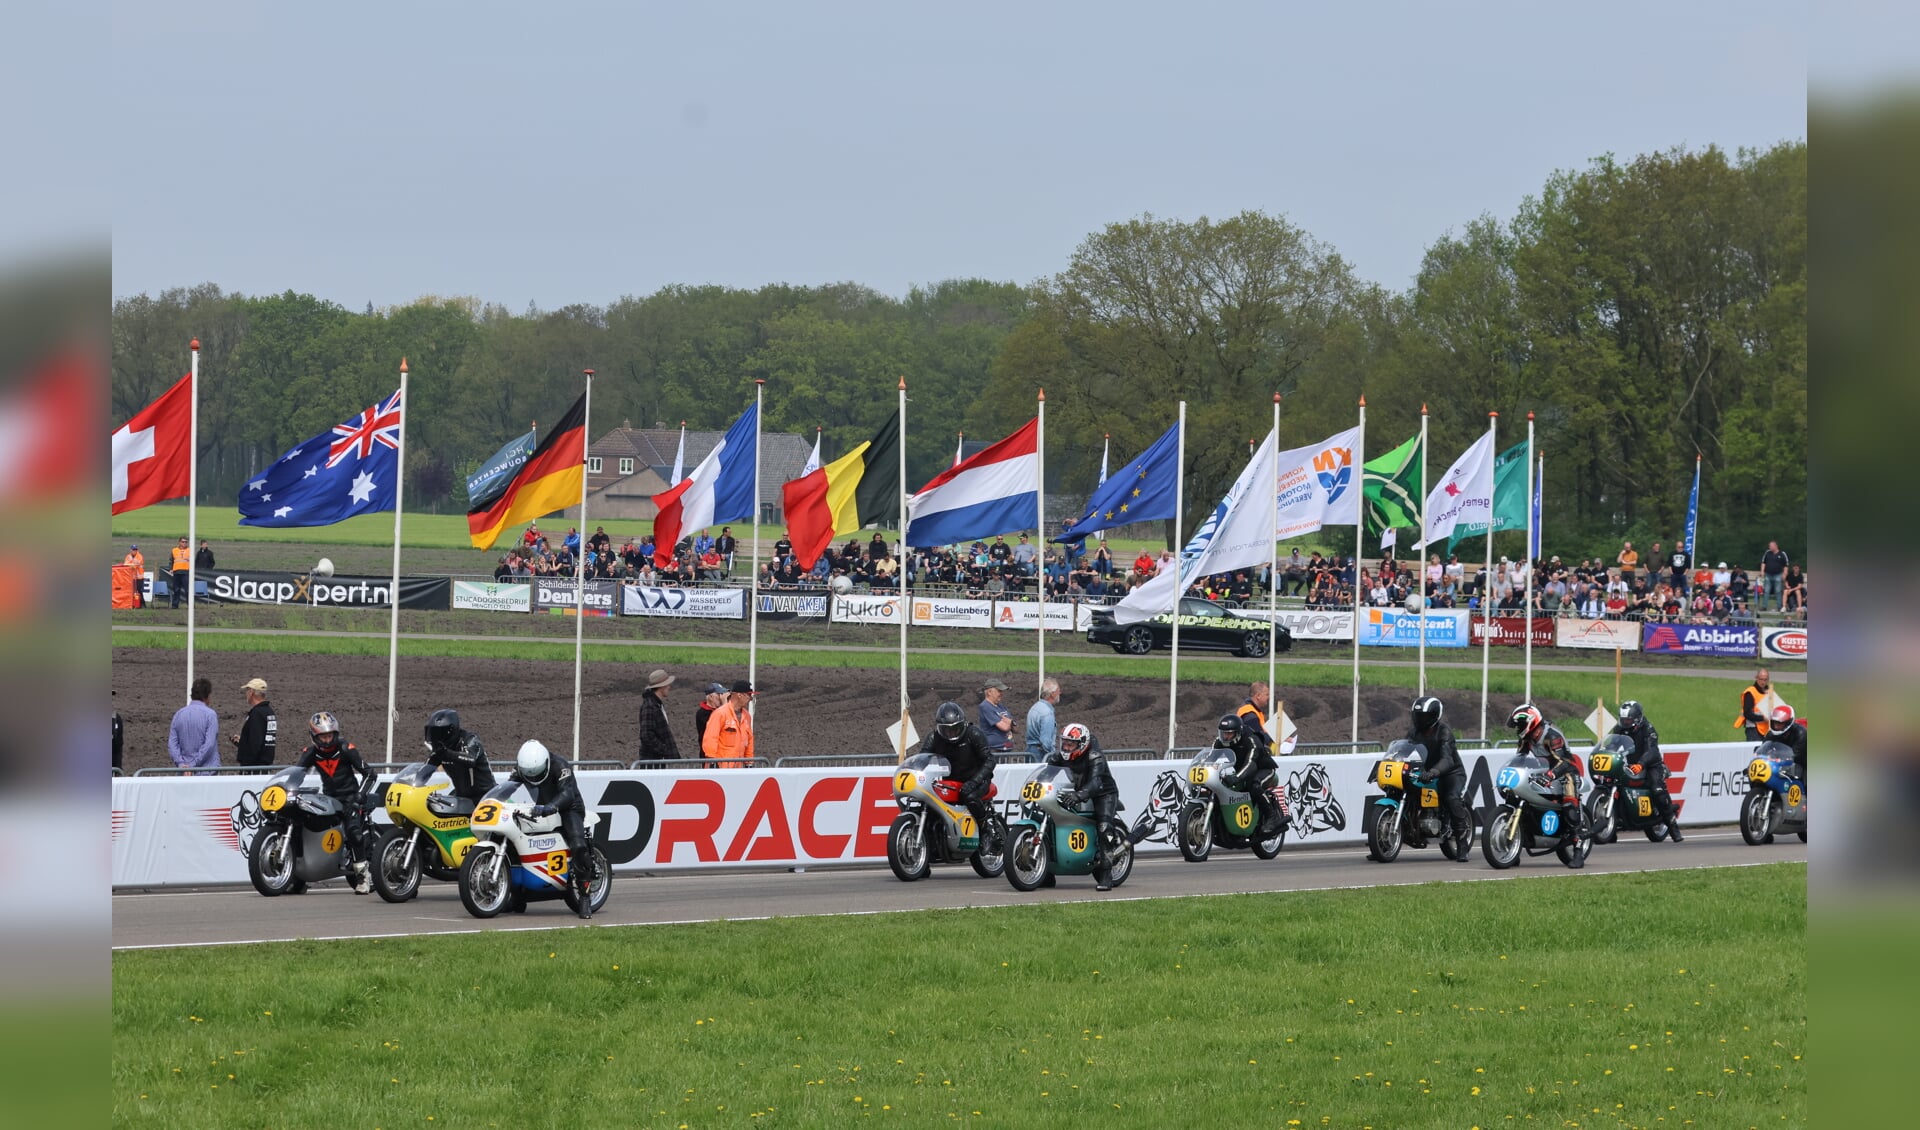 Volle startvelden tijdens de Road Races in Hengelo gegarandeerd. Foto: Henk Teerink